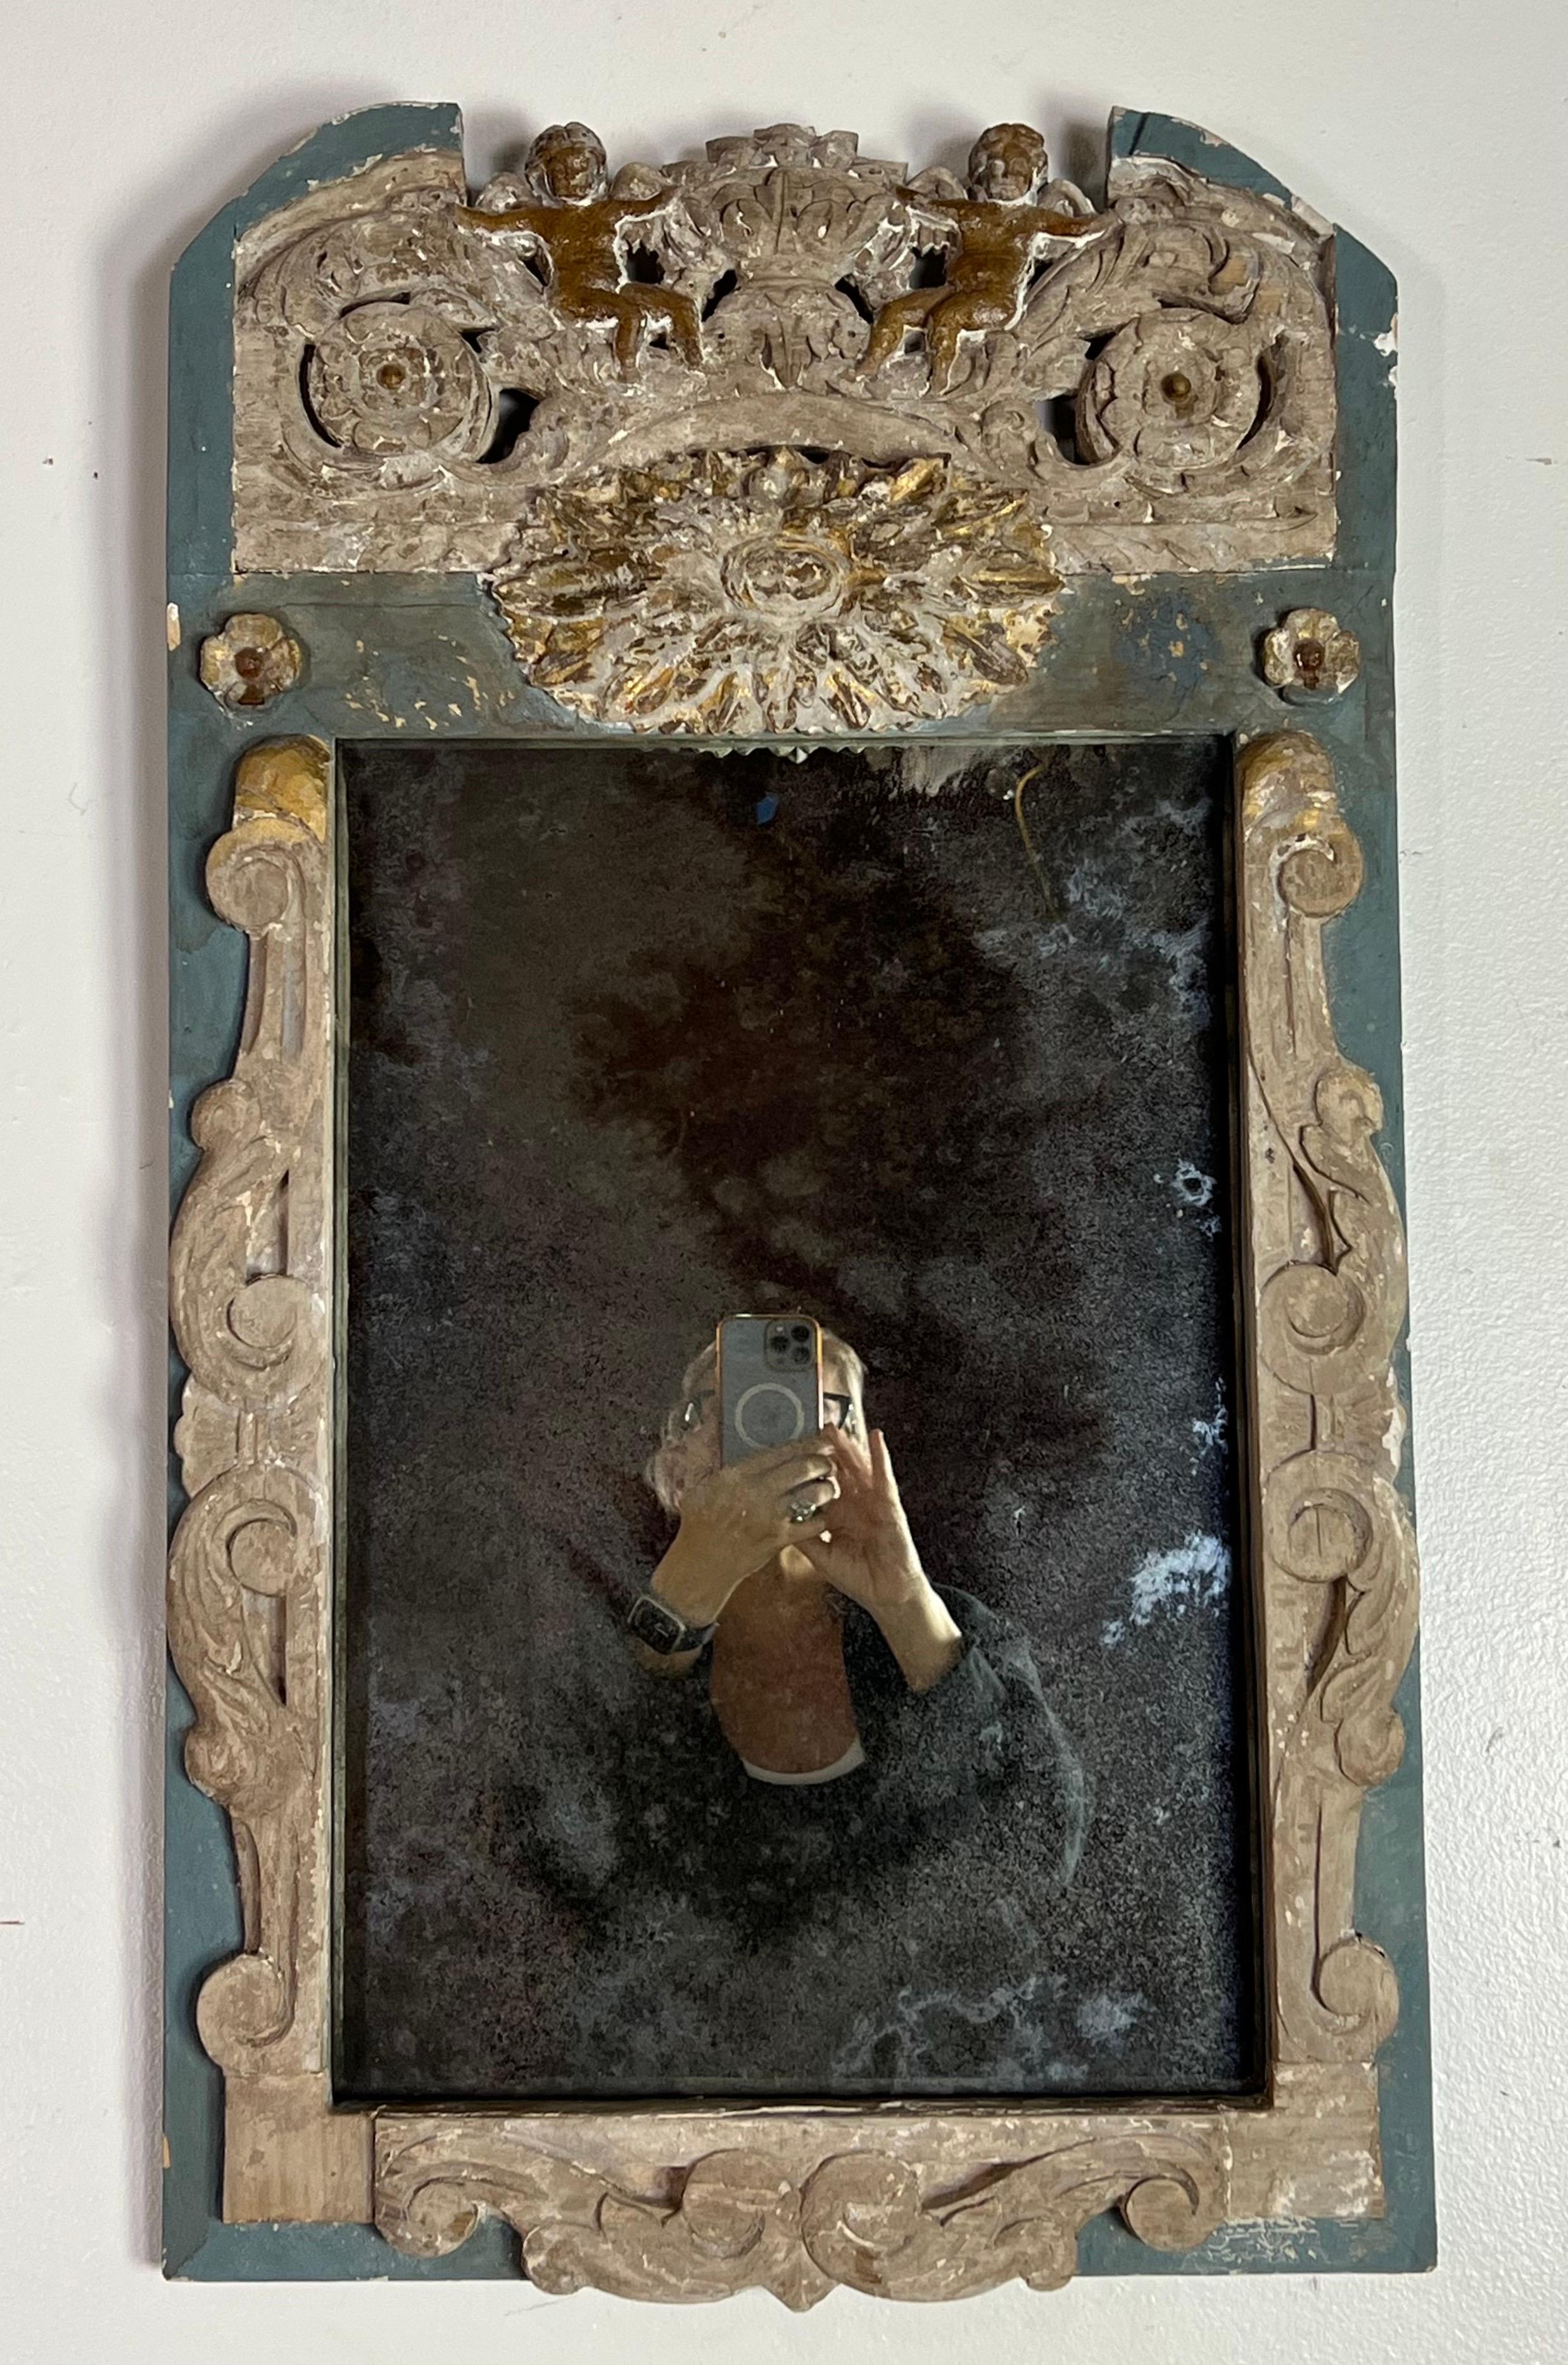 Ein charmanter kleiner italienischer Spiegel, der das Herz der italienischen Kunst und des romantischen Designs berührt.  Der Rahmen des Spiegels ist eine Ausstellung exquisiter Schnitzereien. Die verschlungenen Akanthusblätter, die sich anmutig